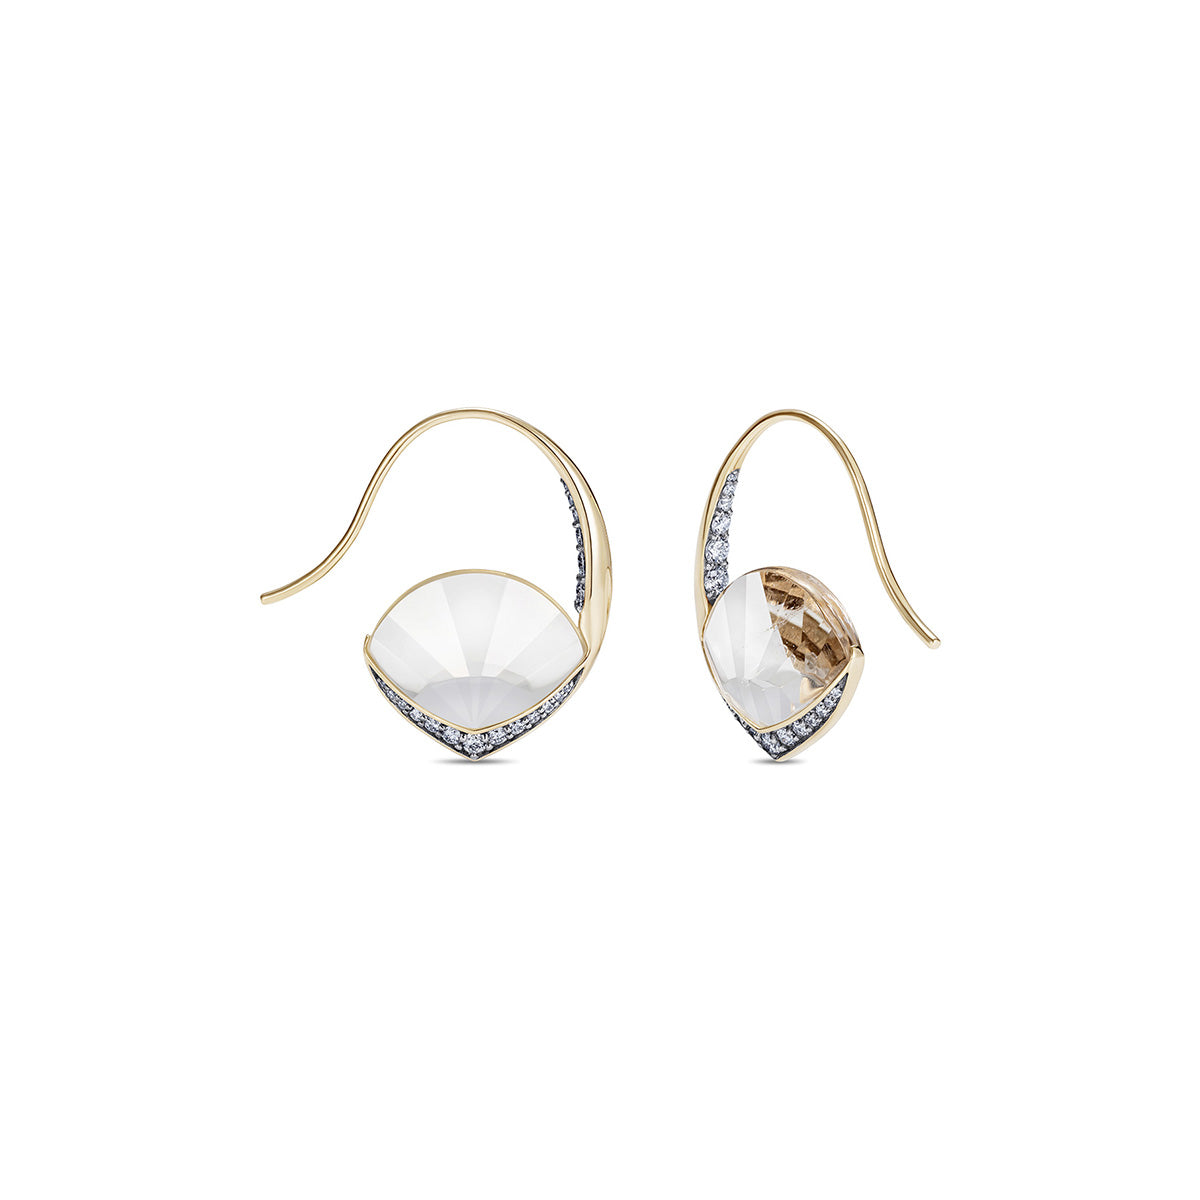 Noor Fares Rock Crystal Earrings with Diamond Pavé  Edit alt text